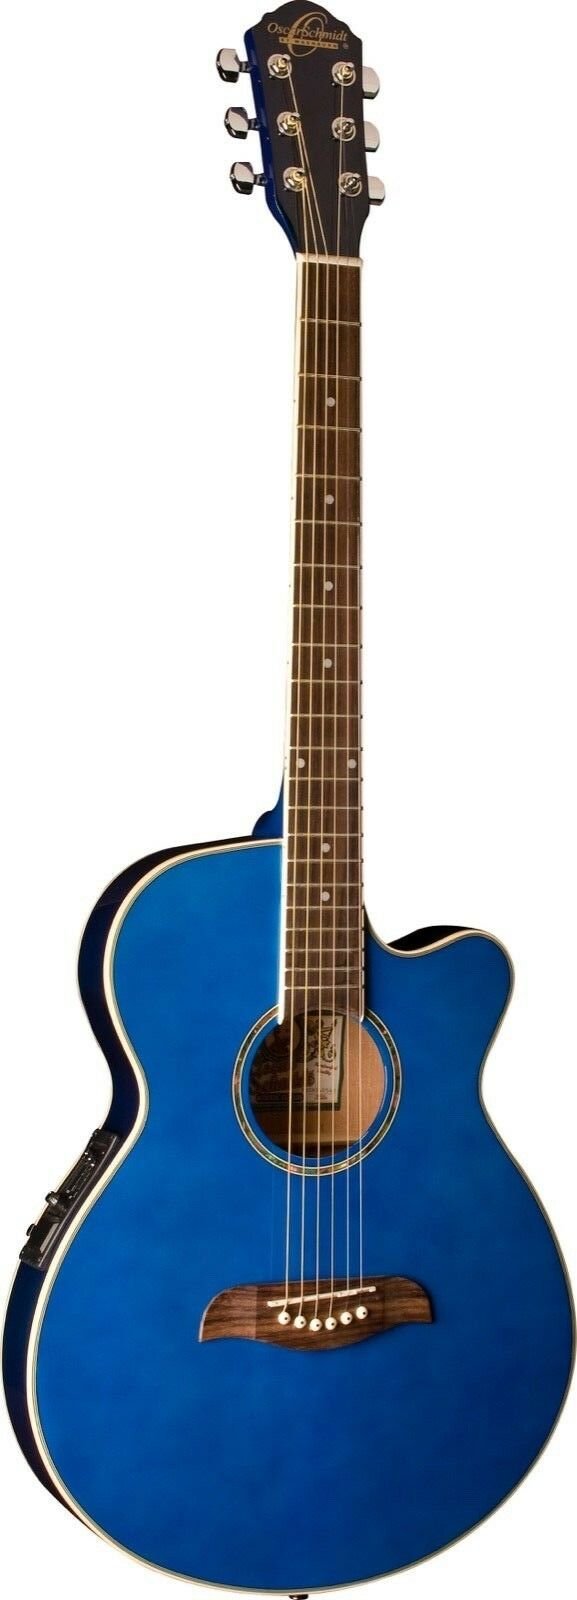 Oscar Schmidt OG8CE Folk Acoustic Electric Guitar Transparent Blue - OG8CETBL